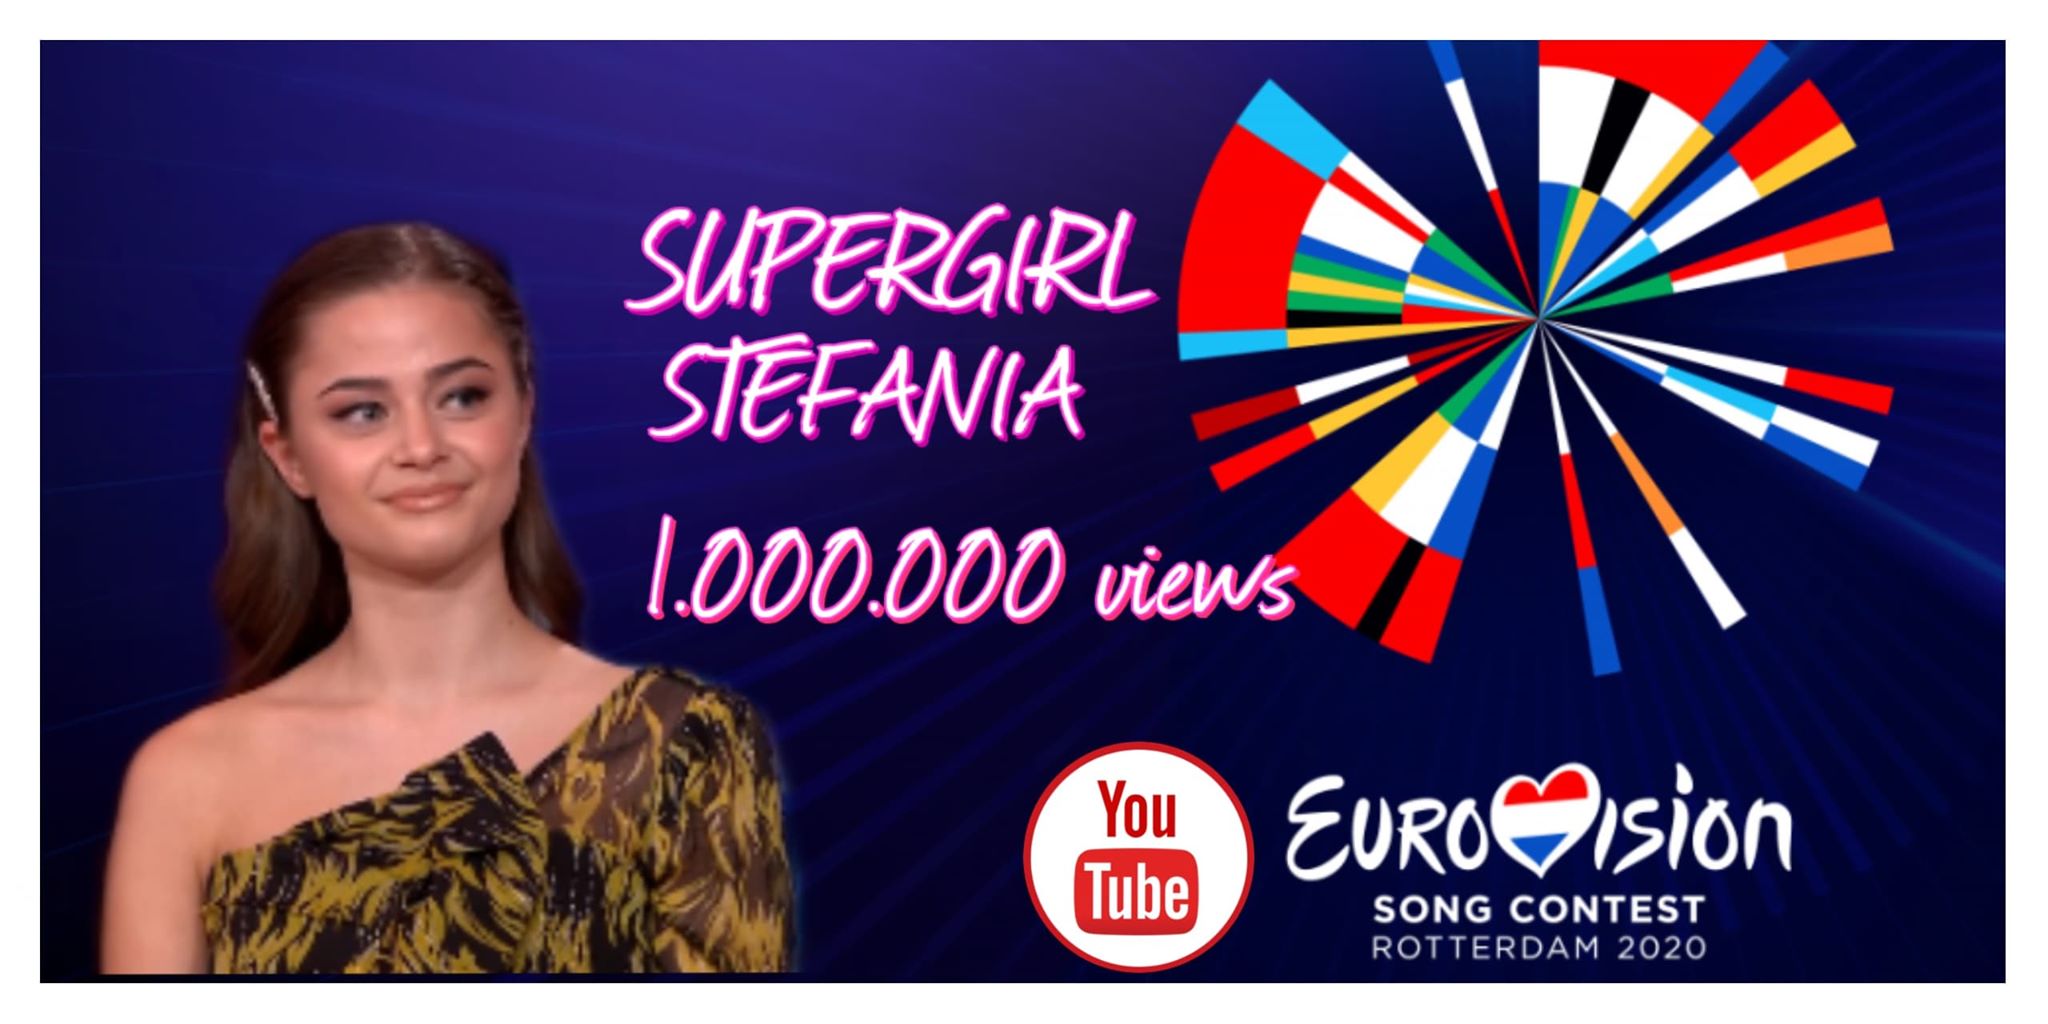 Ελλάδα: Ξεπέρασε το ένα εκατομμύριο views στο Youtube το SUPERG!RL!